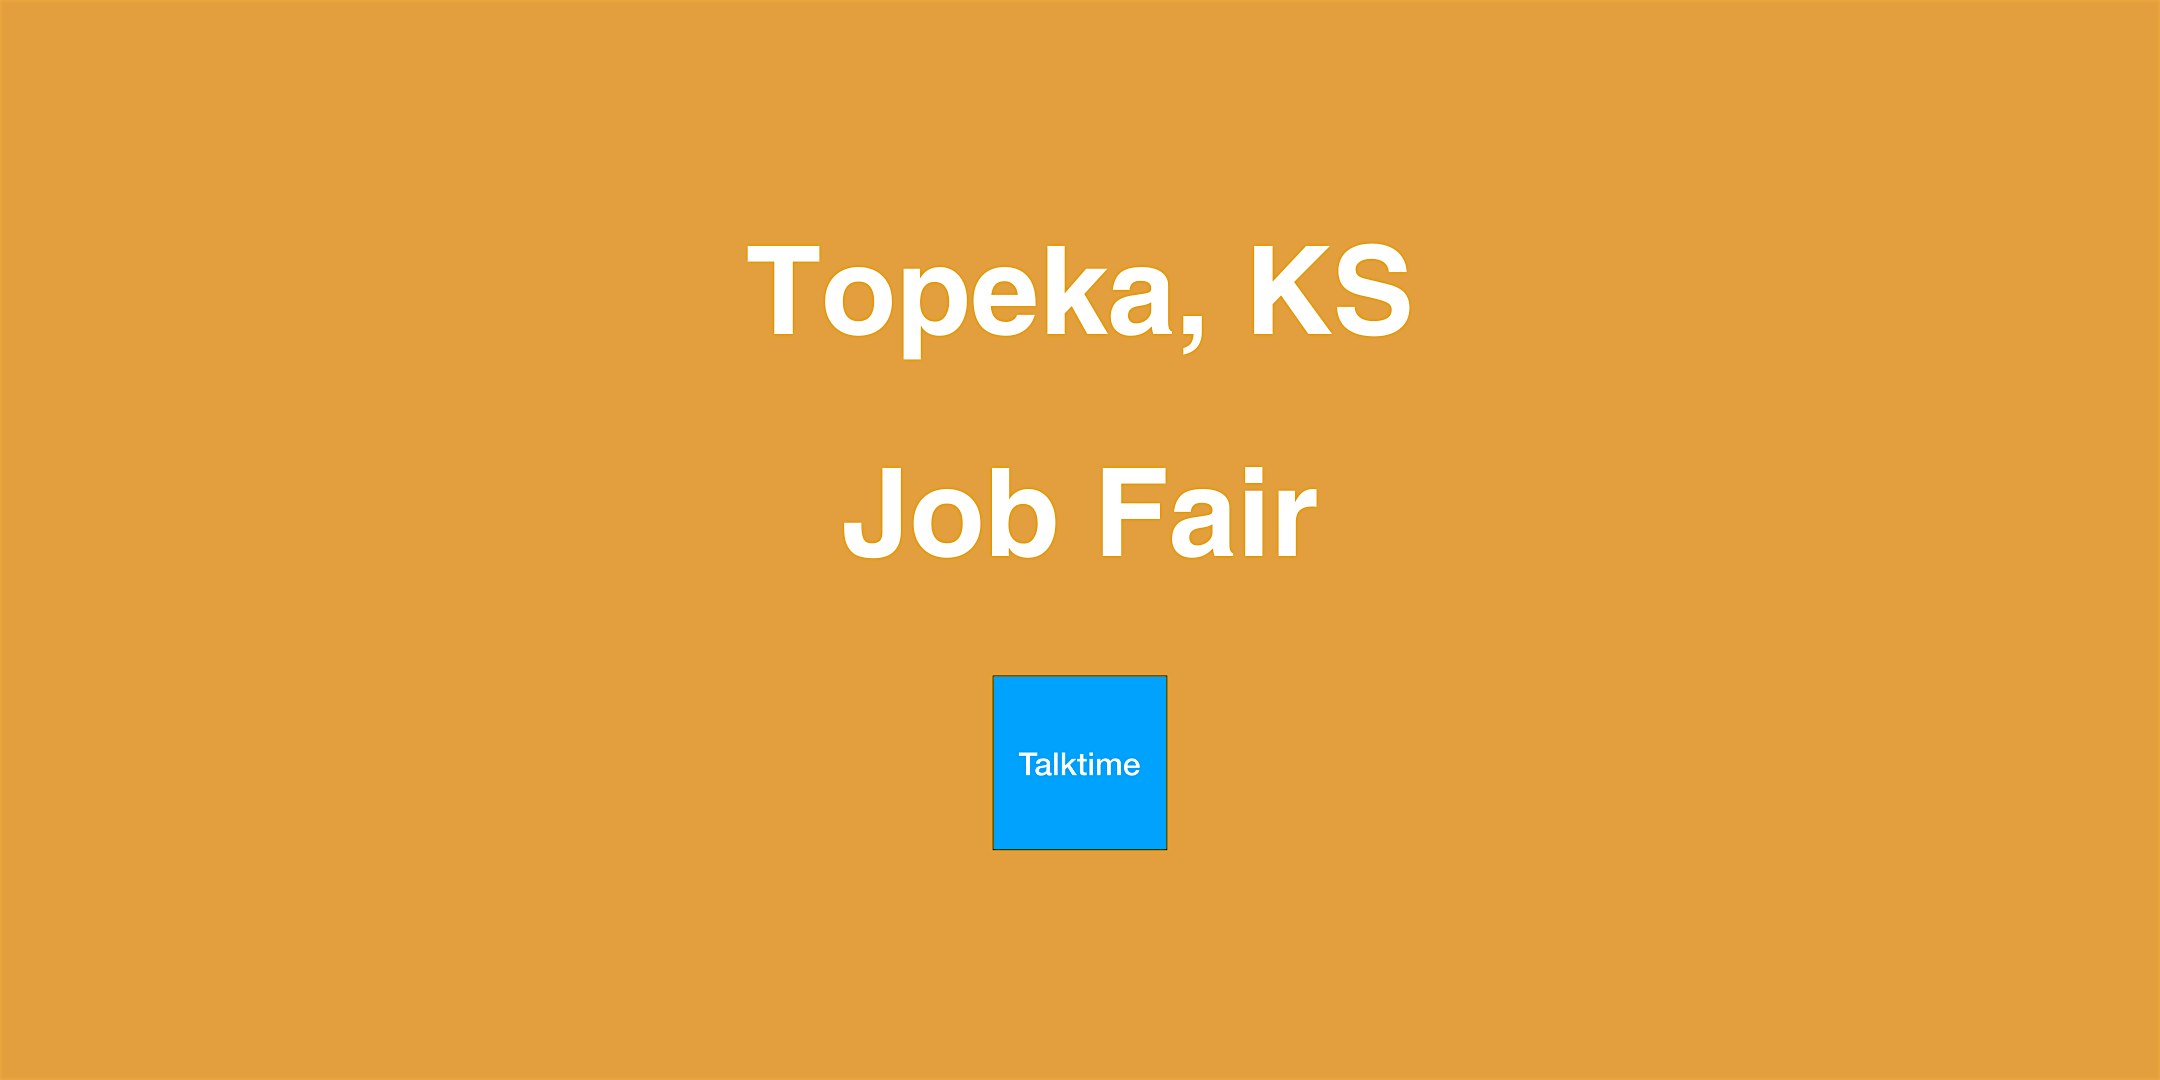 Job Fair - Topeka